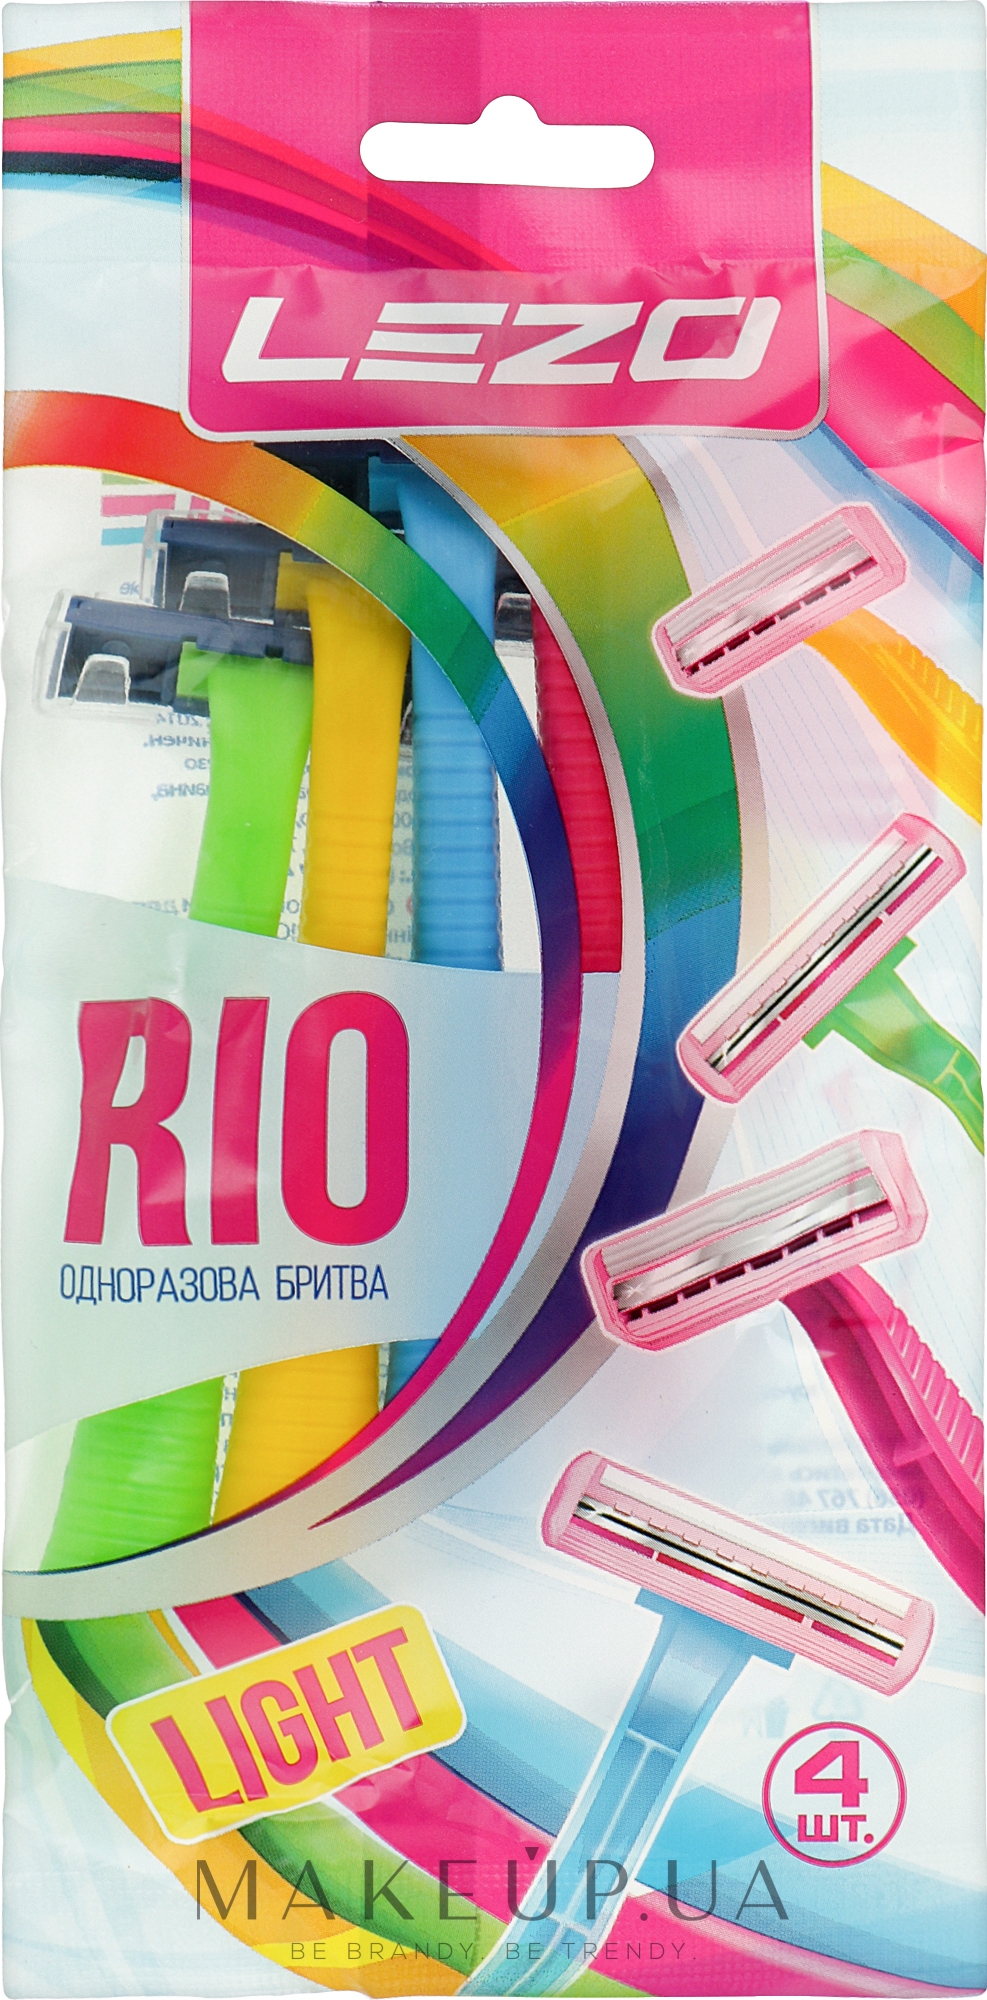 Одноразовый бритвенный станок "Рио", 4 шт - Lezo Rio — фото 4шт